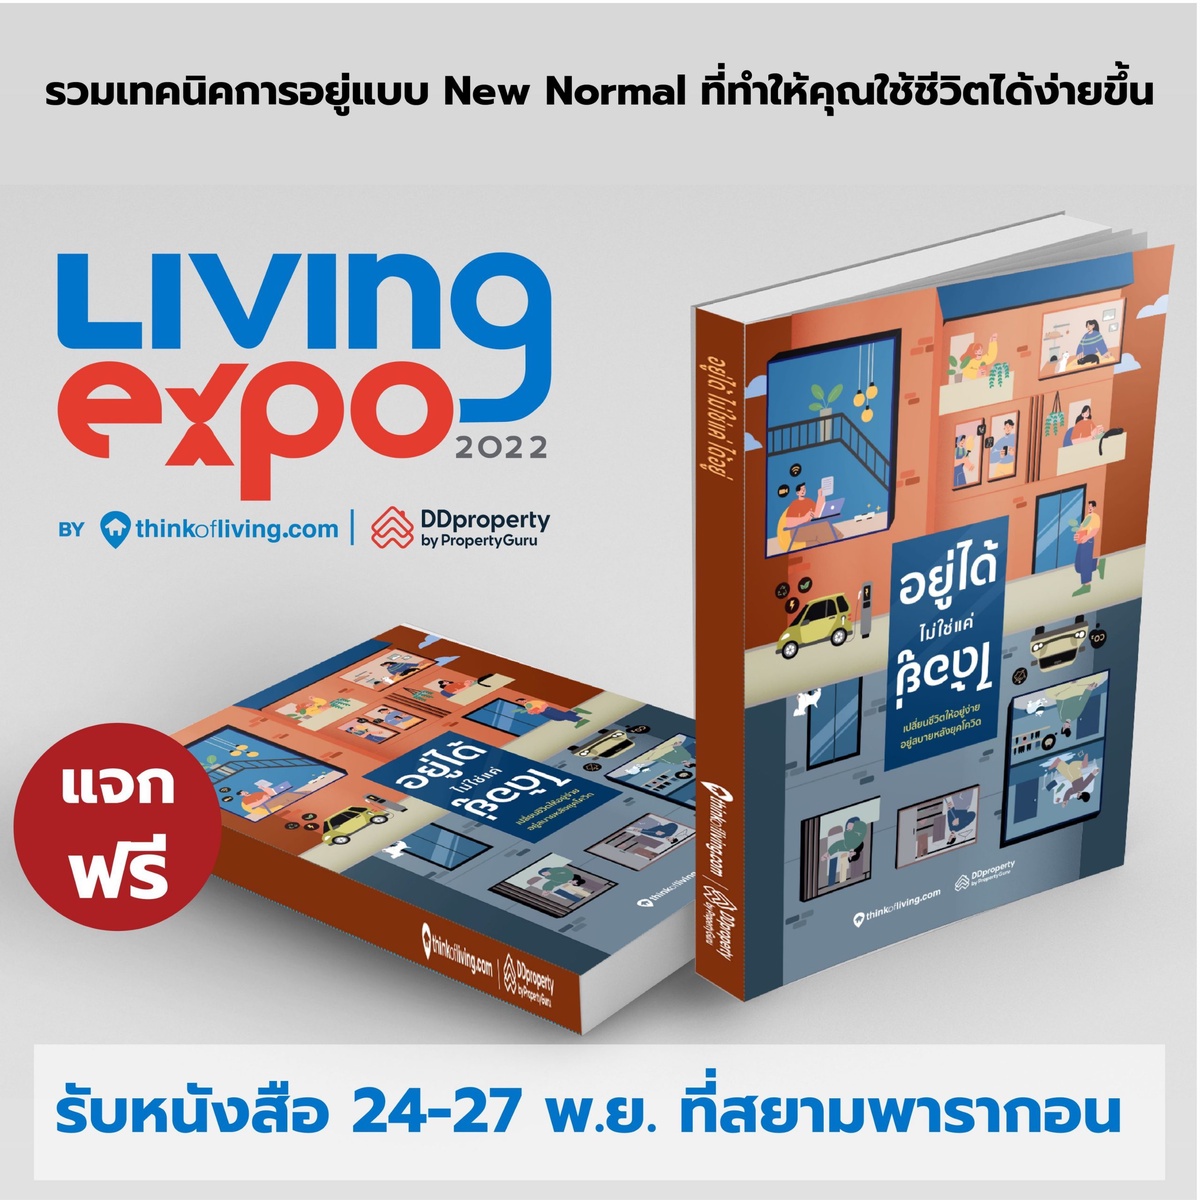 ครั้งแรก! 2 ผู้นำพร็อพเทคไทย Think of Living - ดีดีพร็อพเพอร์ตี้ ผนึกกำลังปลุกตลาดอสังหาฯ คึกคักส่งท้ายปีในงาน Living Expo 2022